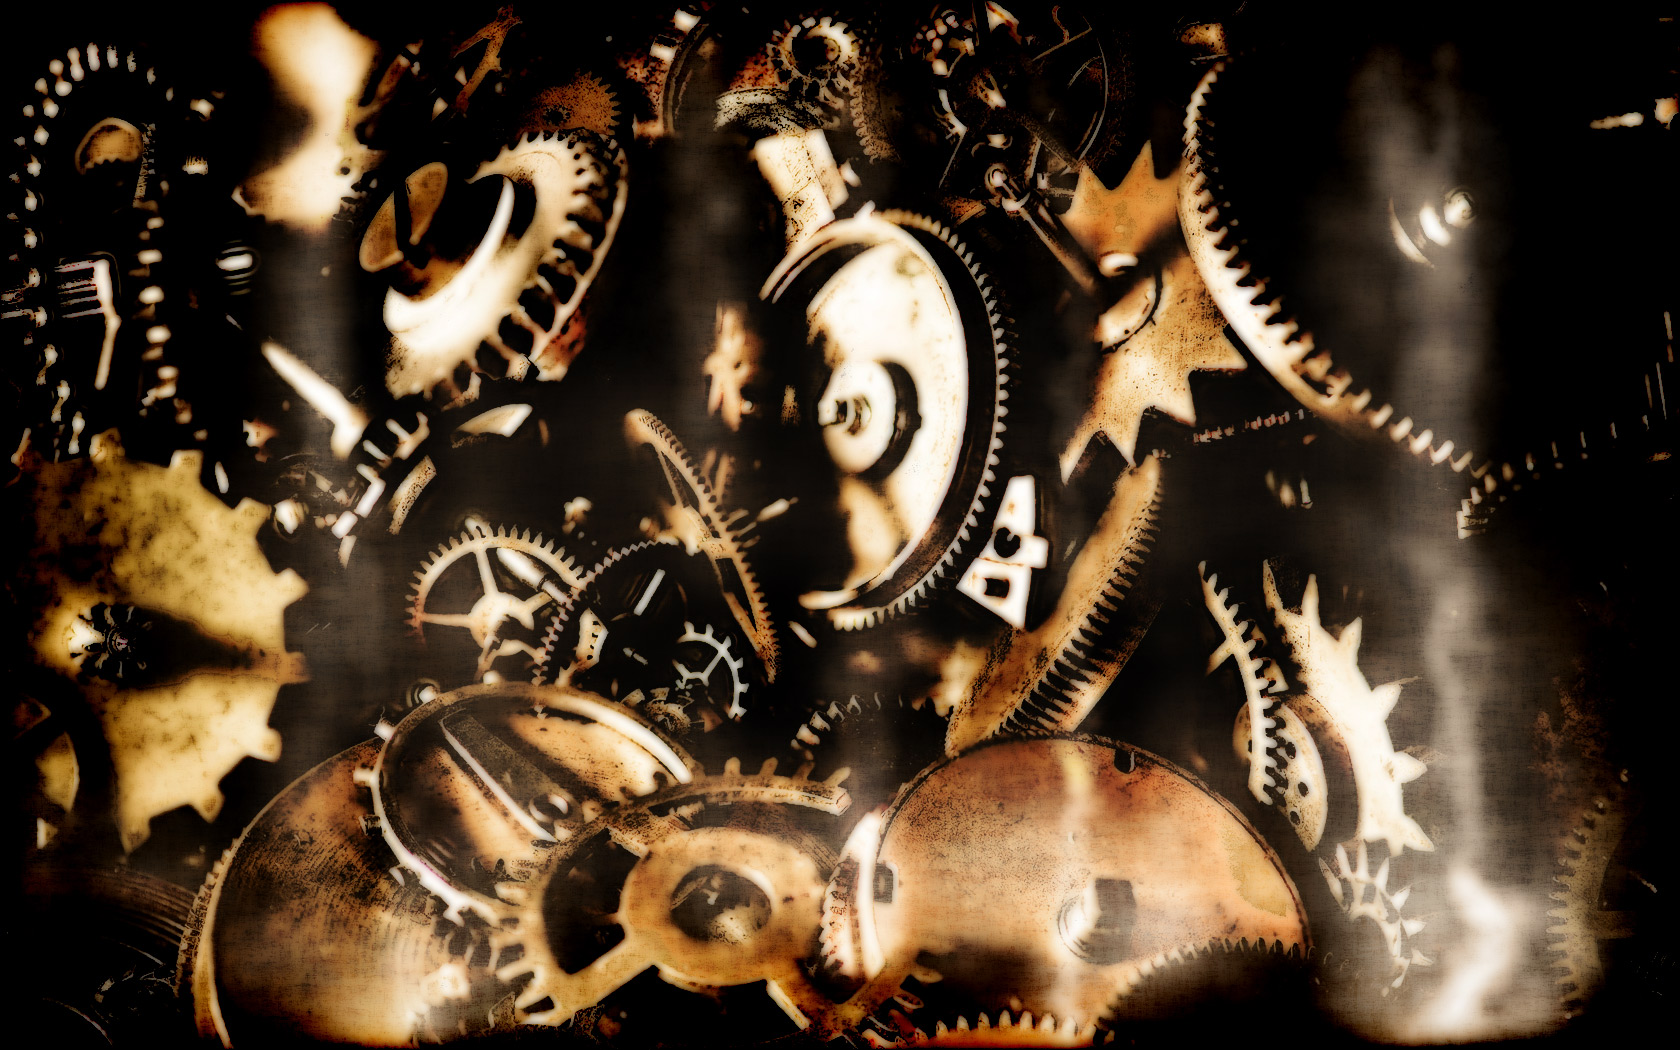 Steampunk mechanical gears cogs wallpaper 1680x1050 62240 1680x1050